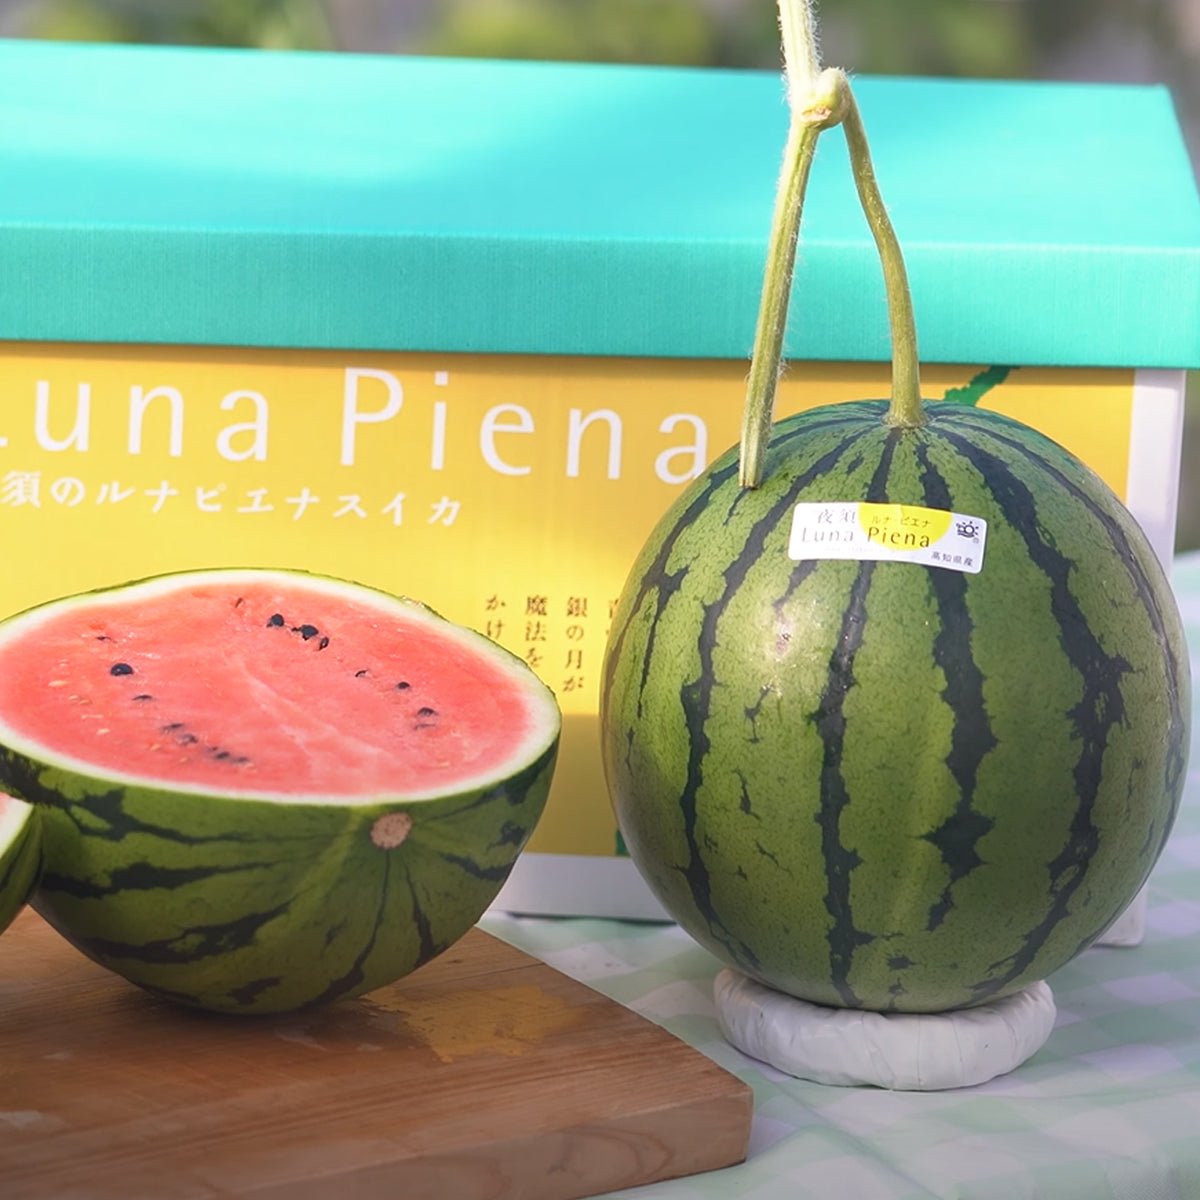 Lunar Piena Premium Watermelon - Tokyo Fresh Direct